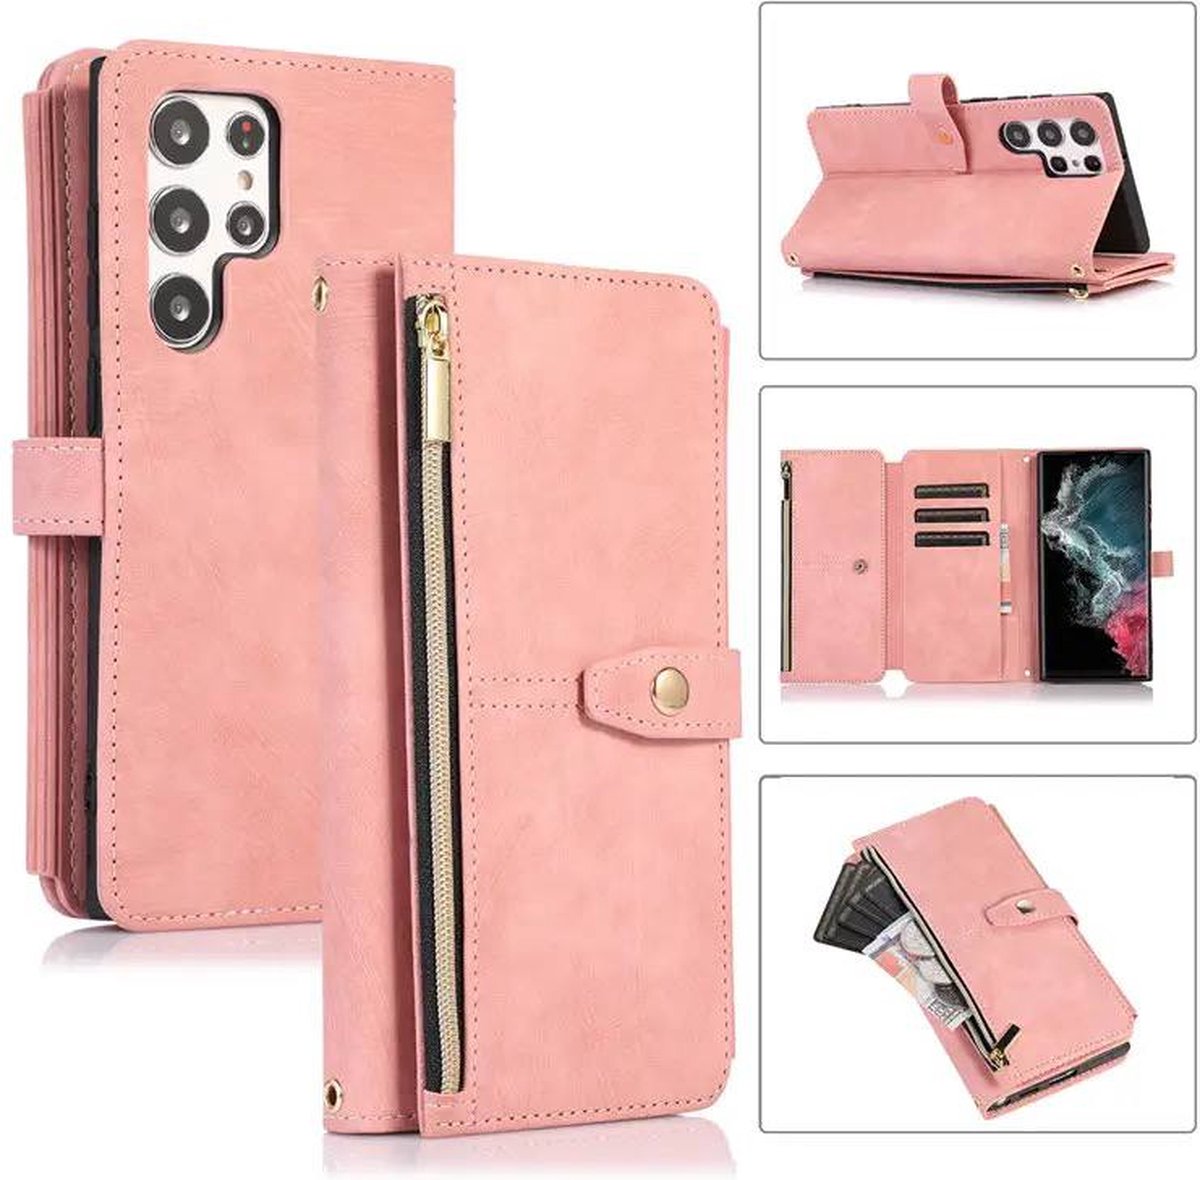 Hoesje Samsung galaxy S22 Ultra Roze hoesje-Book Case – Portemonnee Hoesje – Wallet book case - ruimte voor Extra pasje en munten-super stevige hoesje portemonnee Samsung S22 Ultra